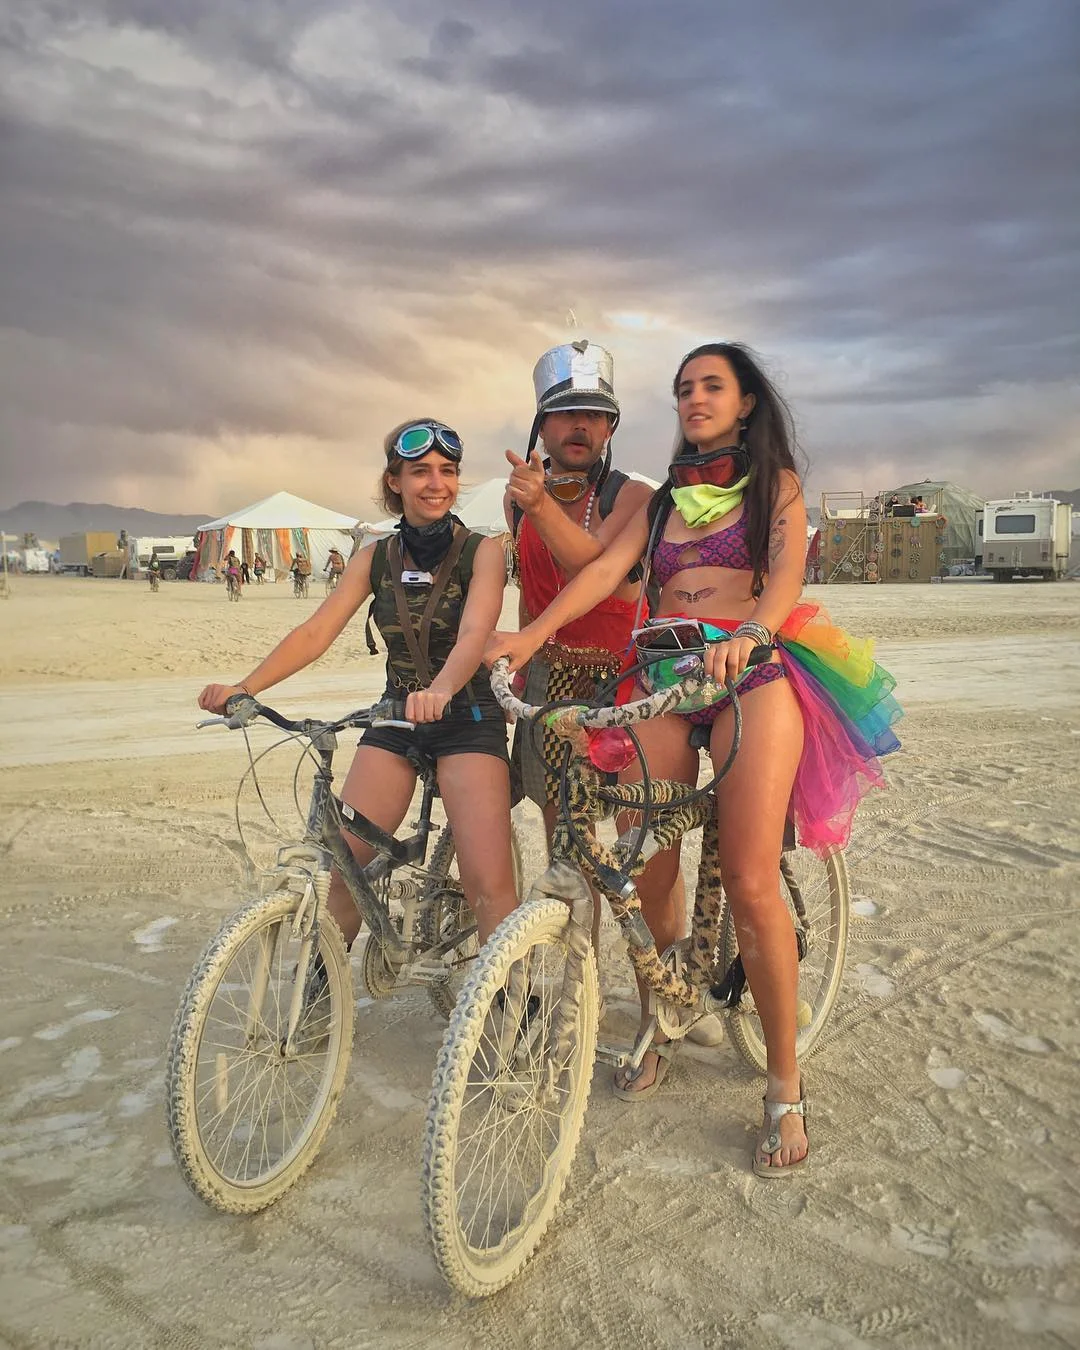 Пыль, голые тела и современное искусство: крутые фото с фестиваля Burning Man 2017 - фото 336422